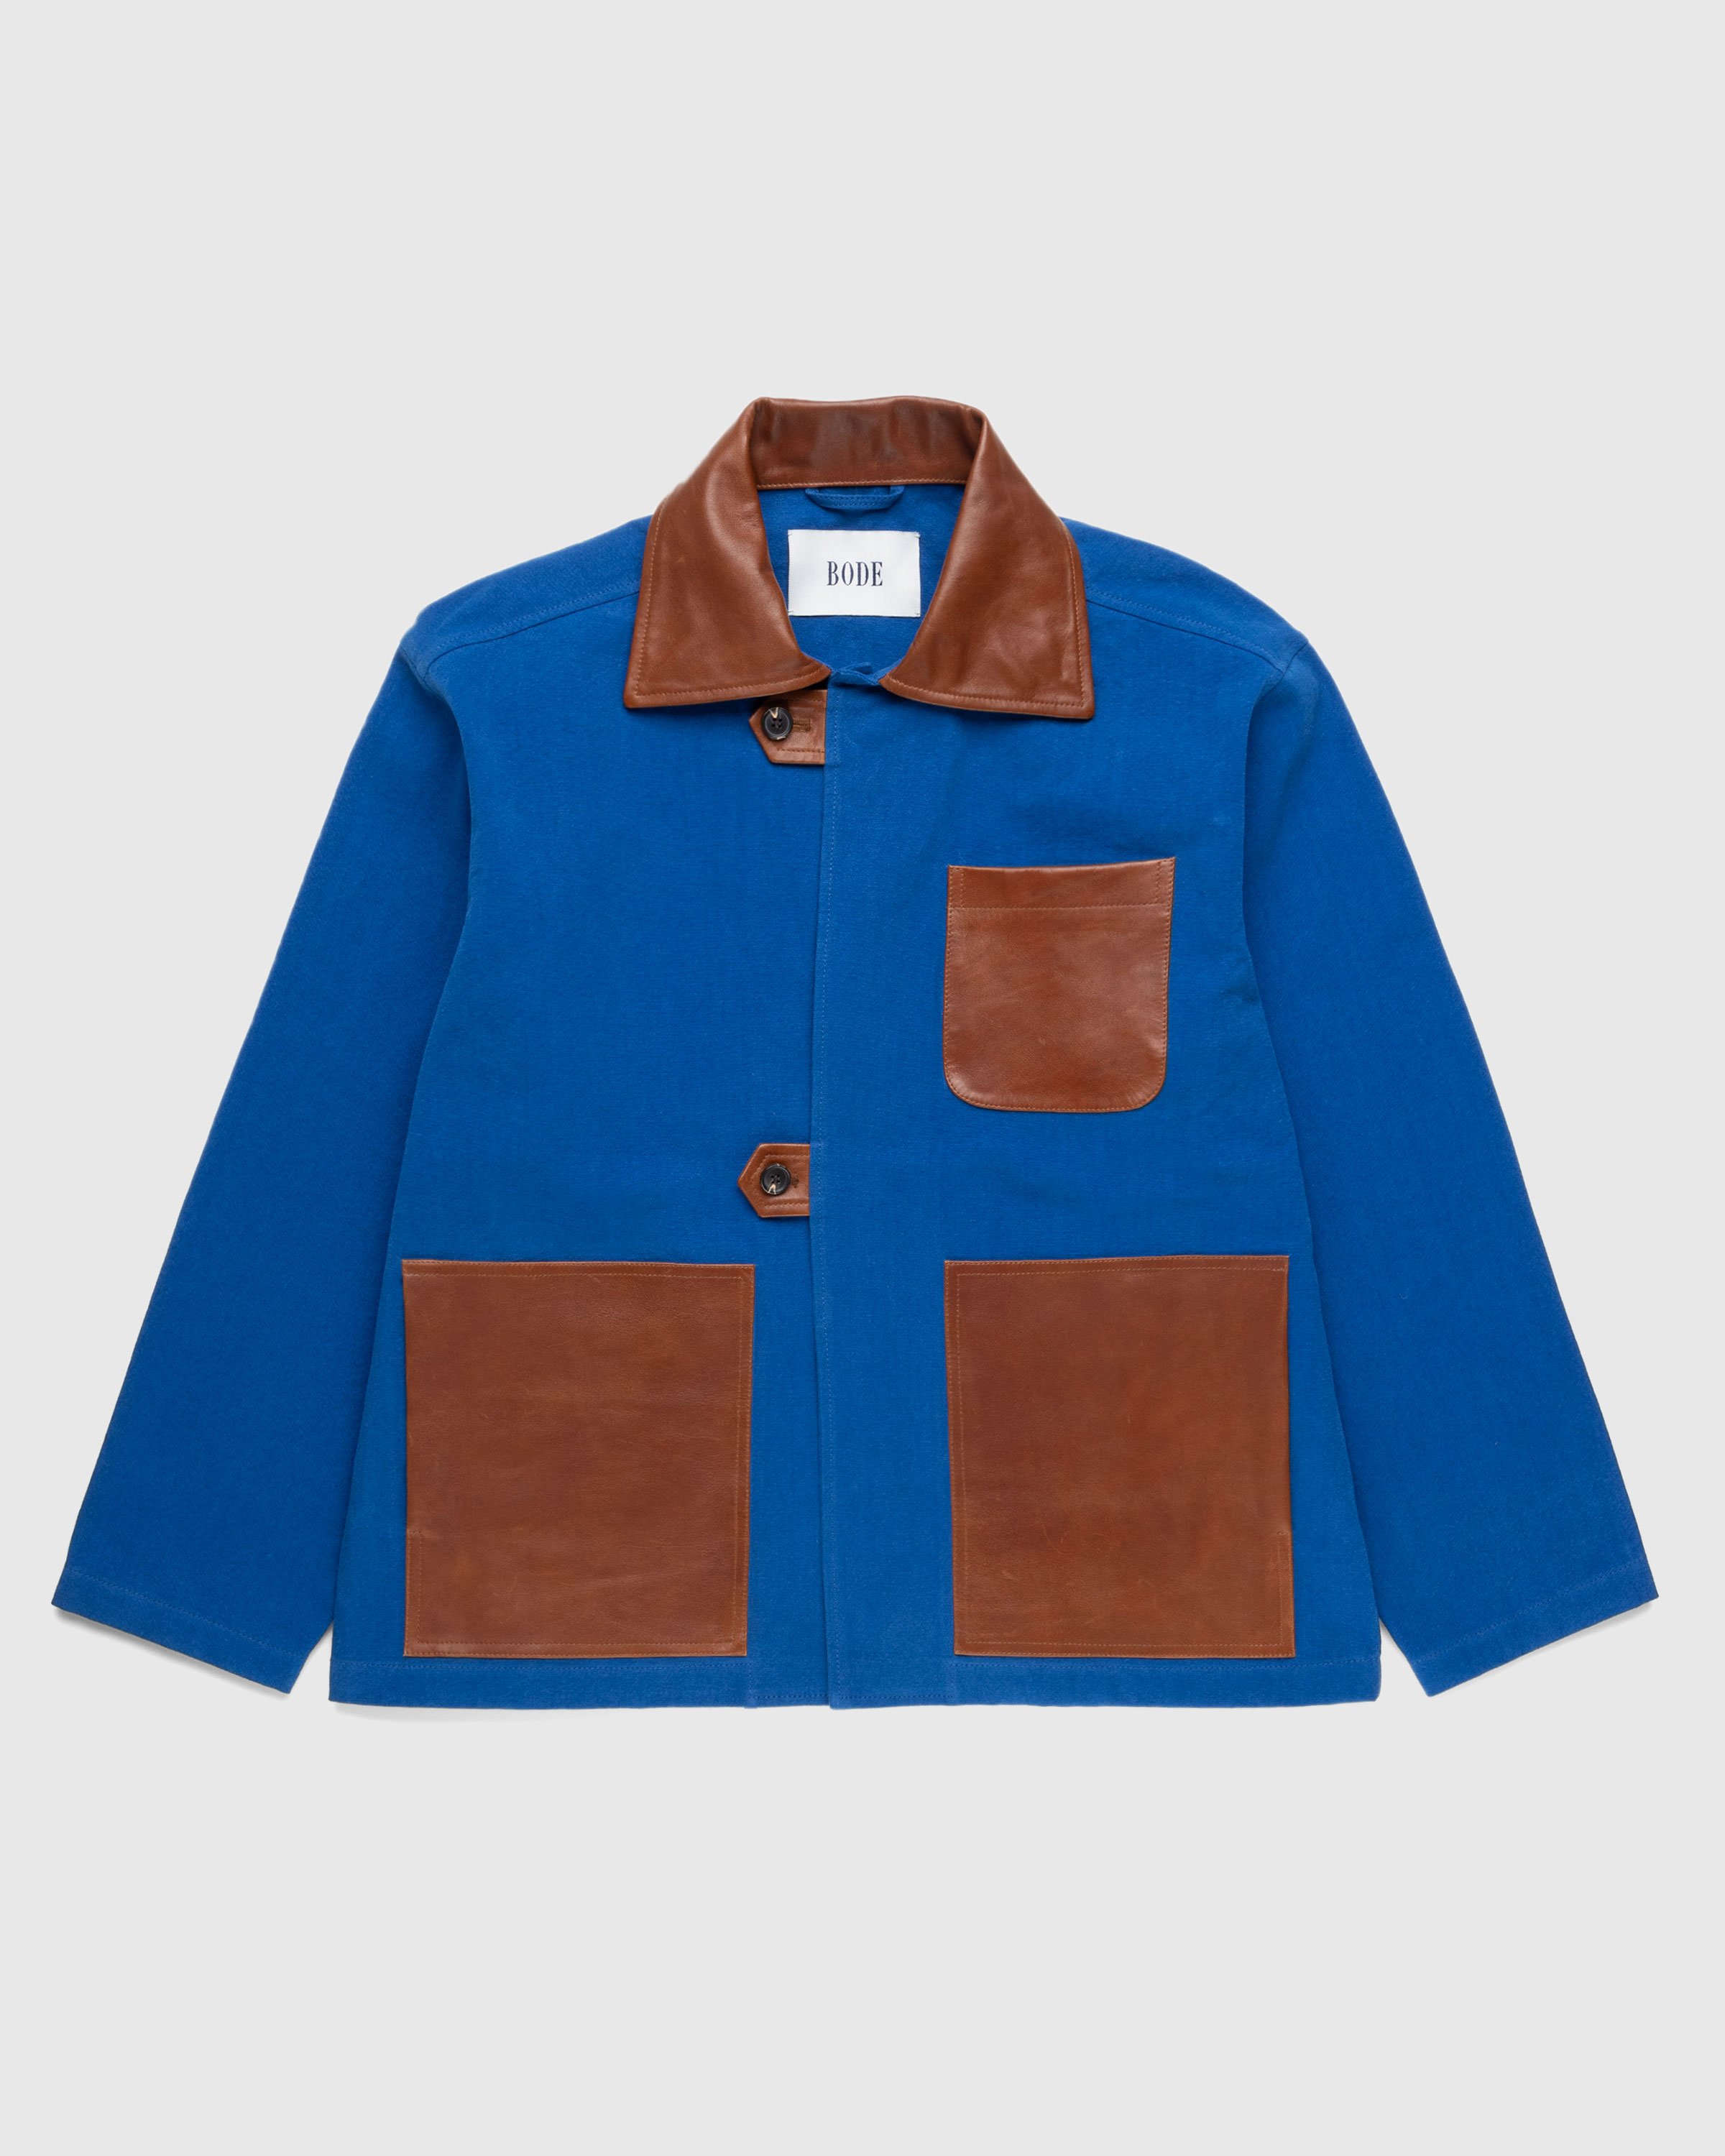 Bode - Leather Tab Jacket - Clothing - Blue - Image 1